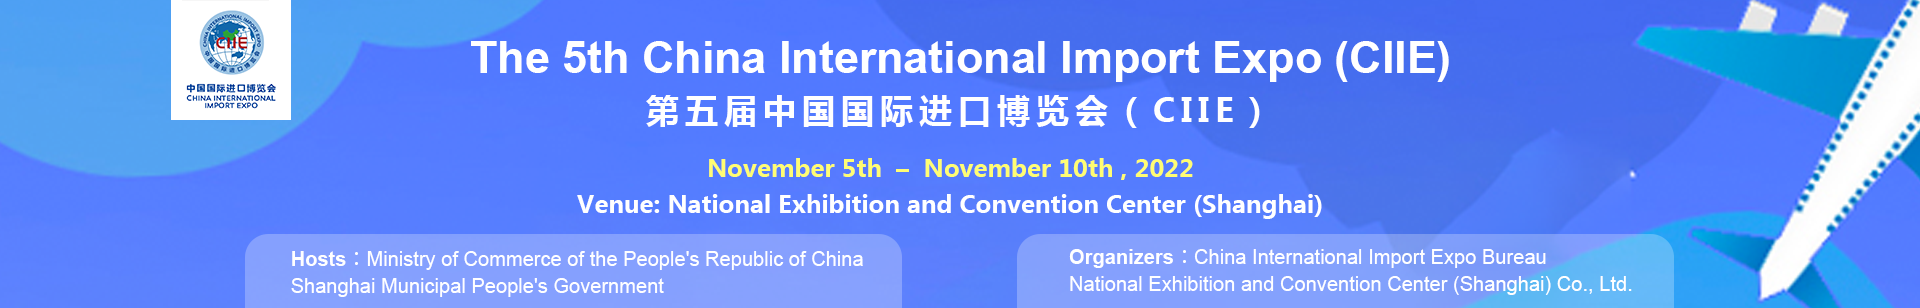 第五届中国国际进口博览会 CIIE